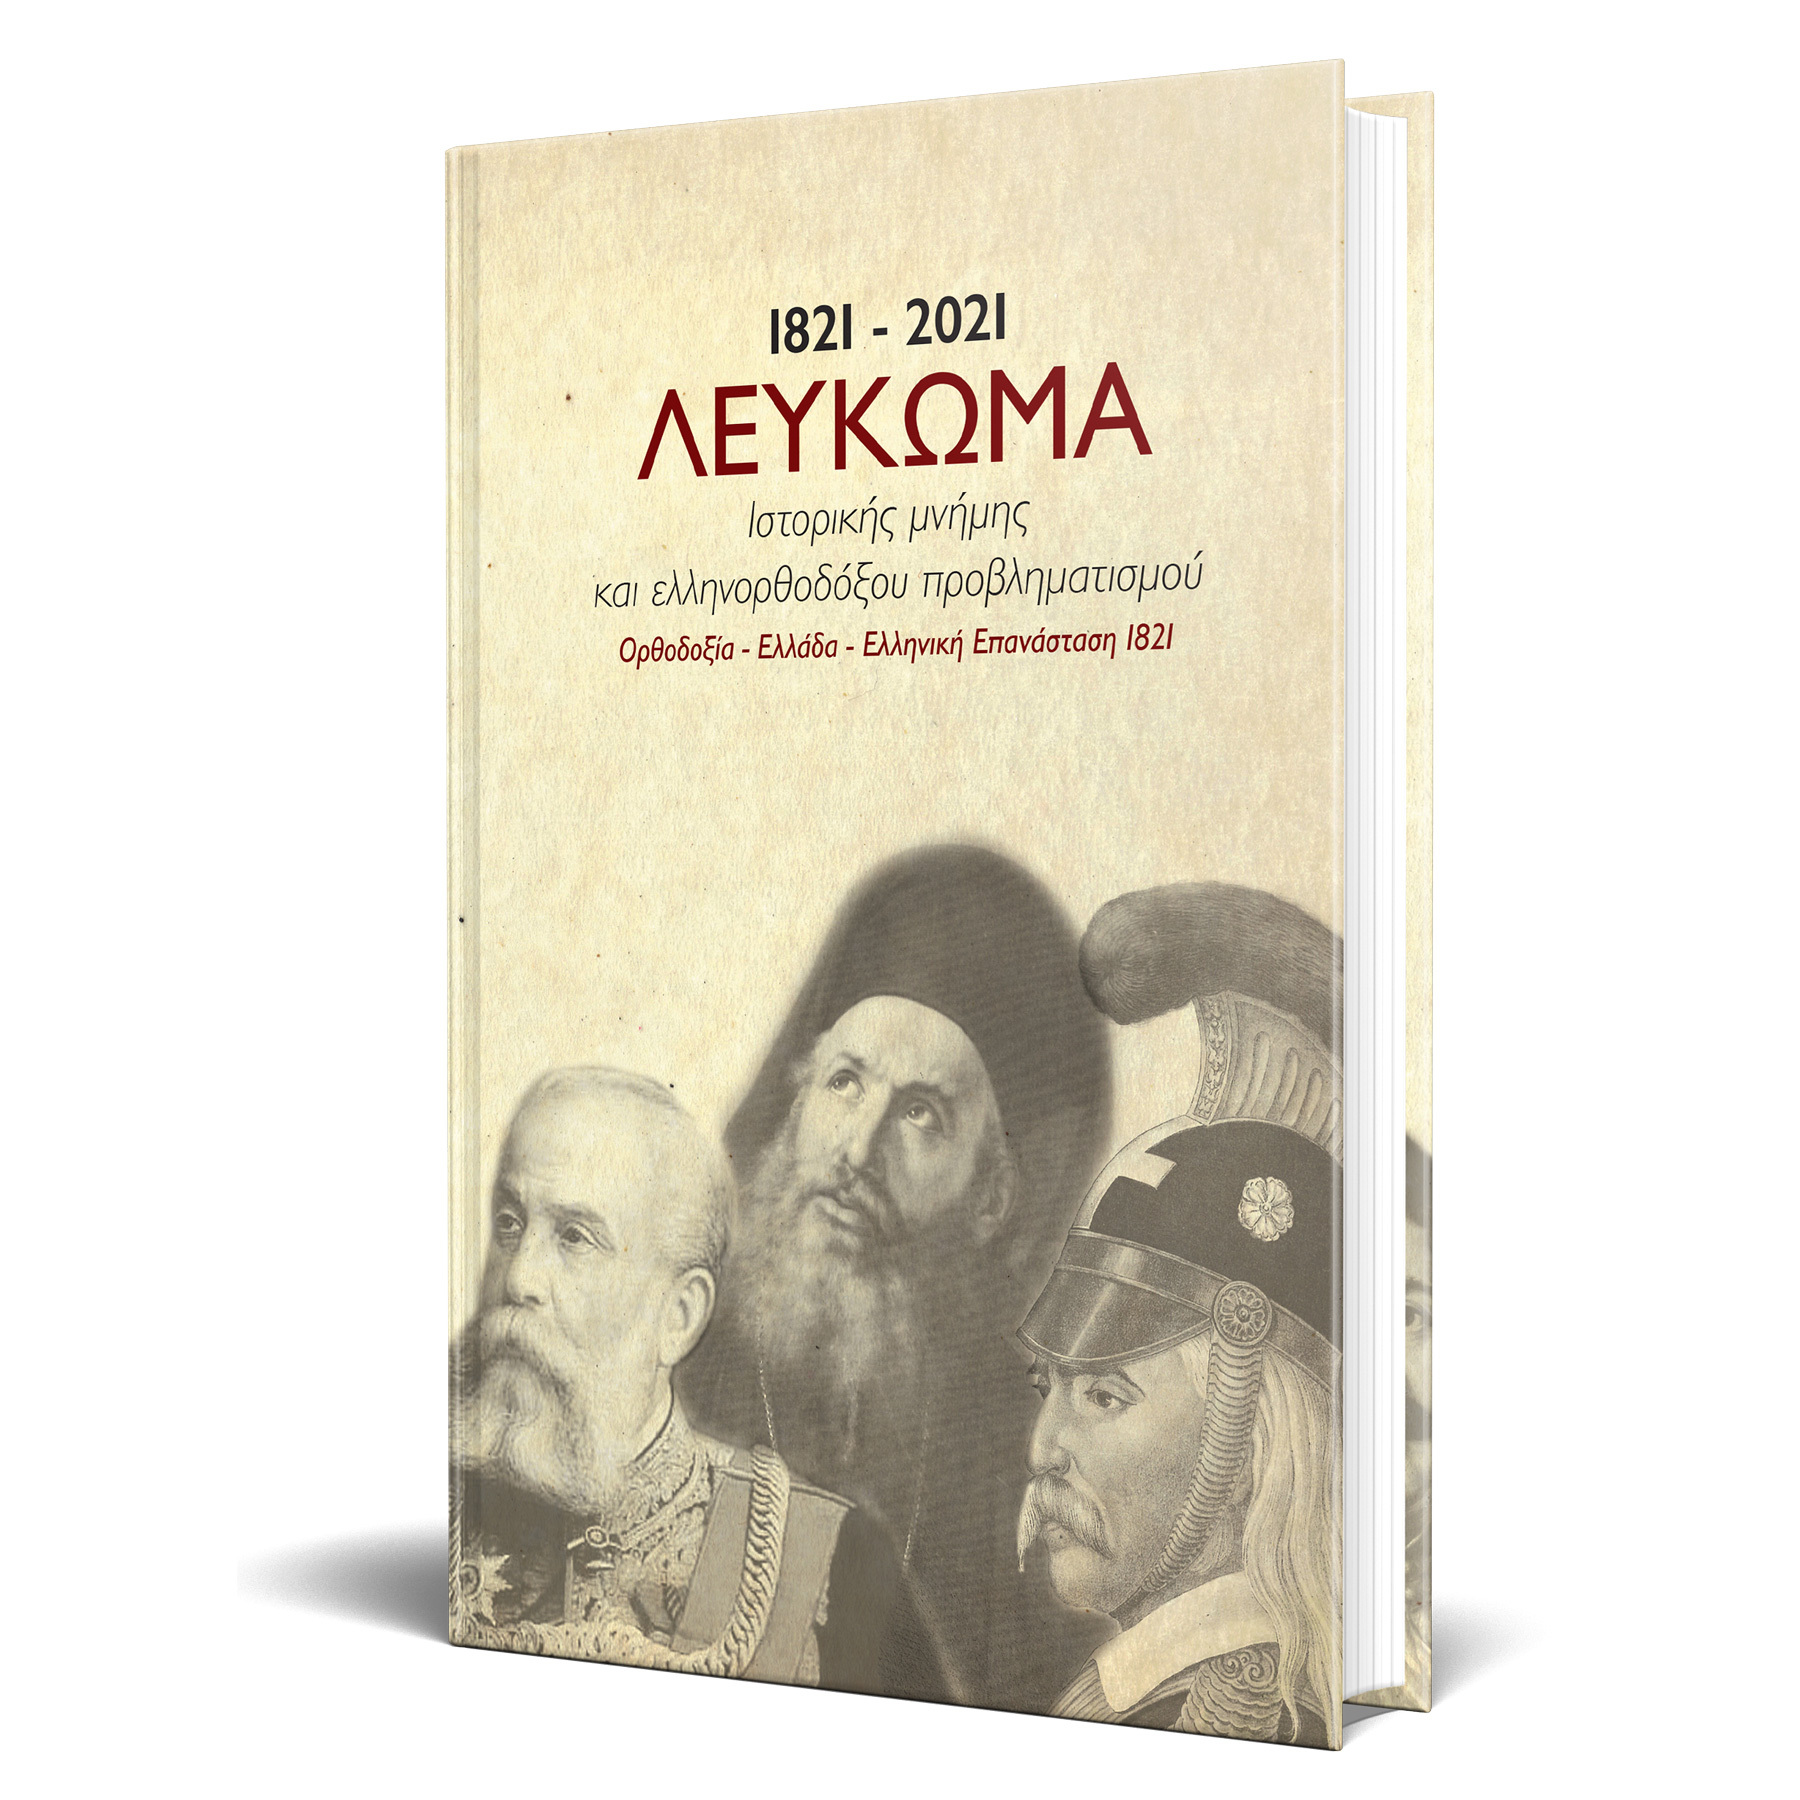 Μέλαθρον Οικουμενικού Ελληνισμού Product-mockup-leukoma1821-2021-1